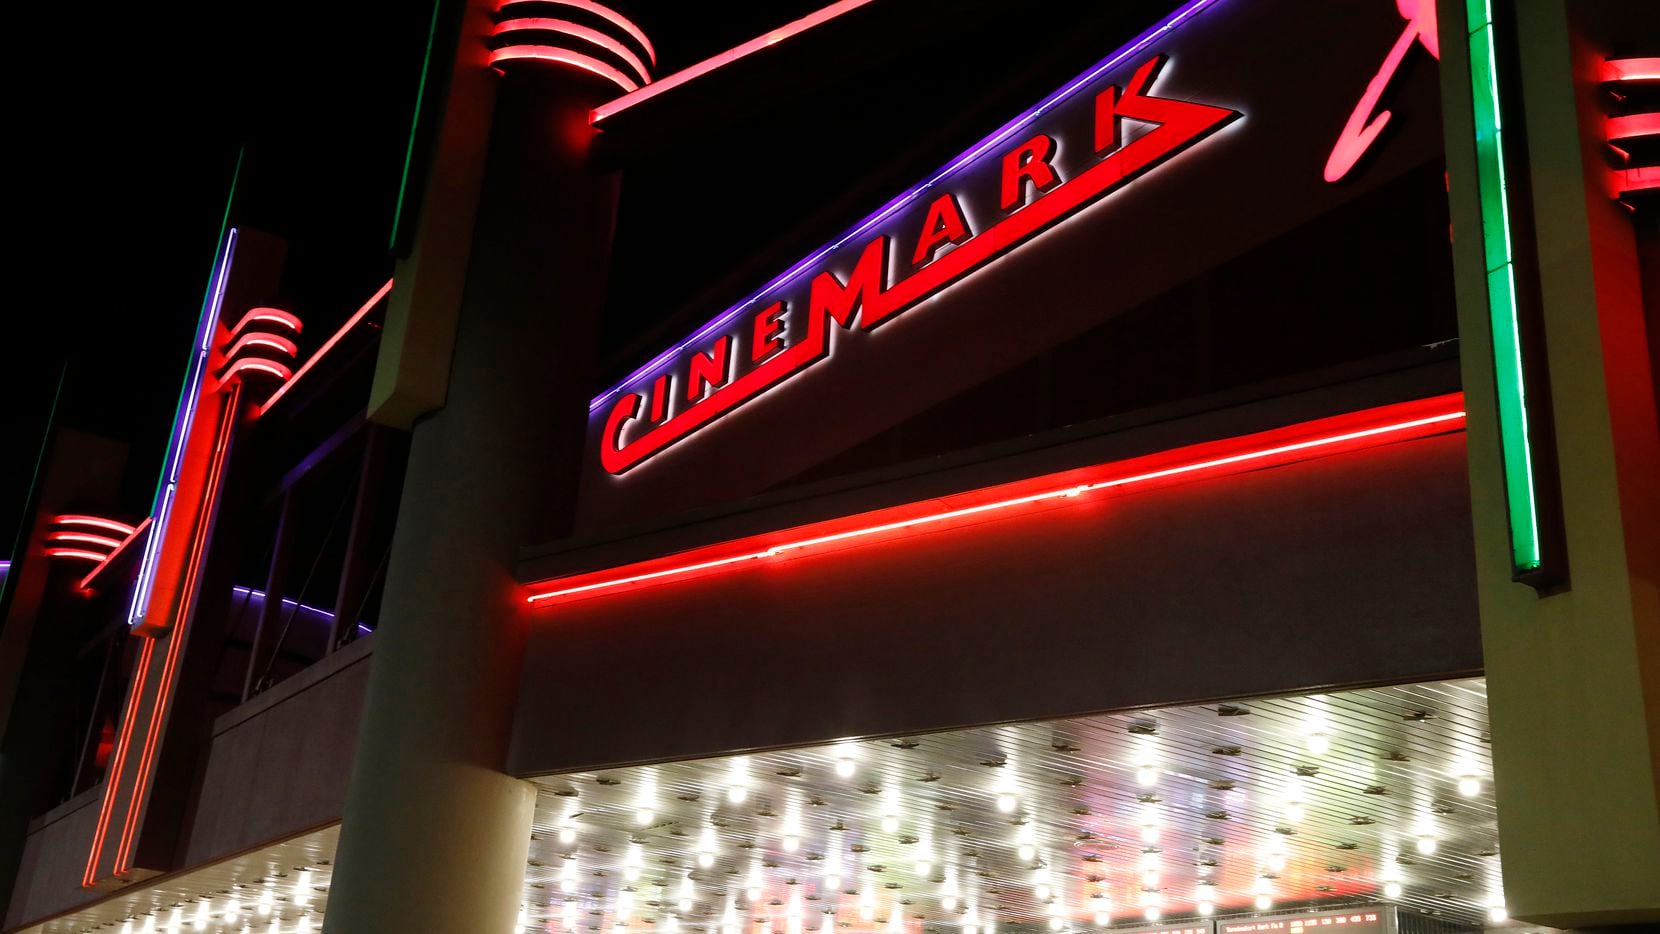 Cinemark reportó ganancias en su último trimestre de 2021 ¿Salvado por la telaraña?